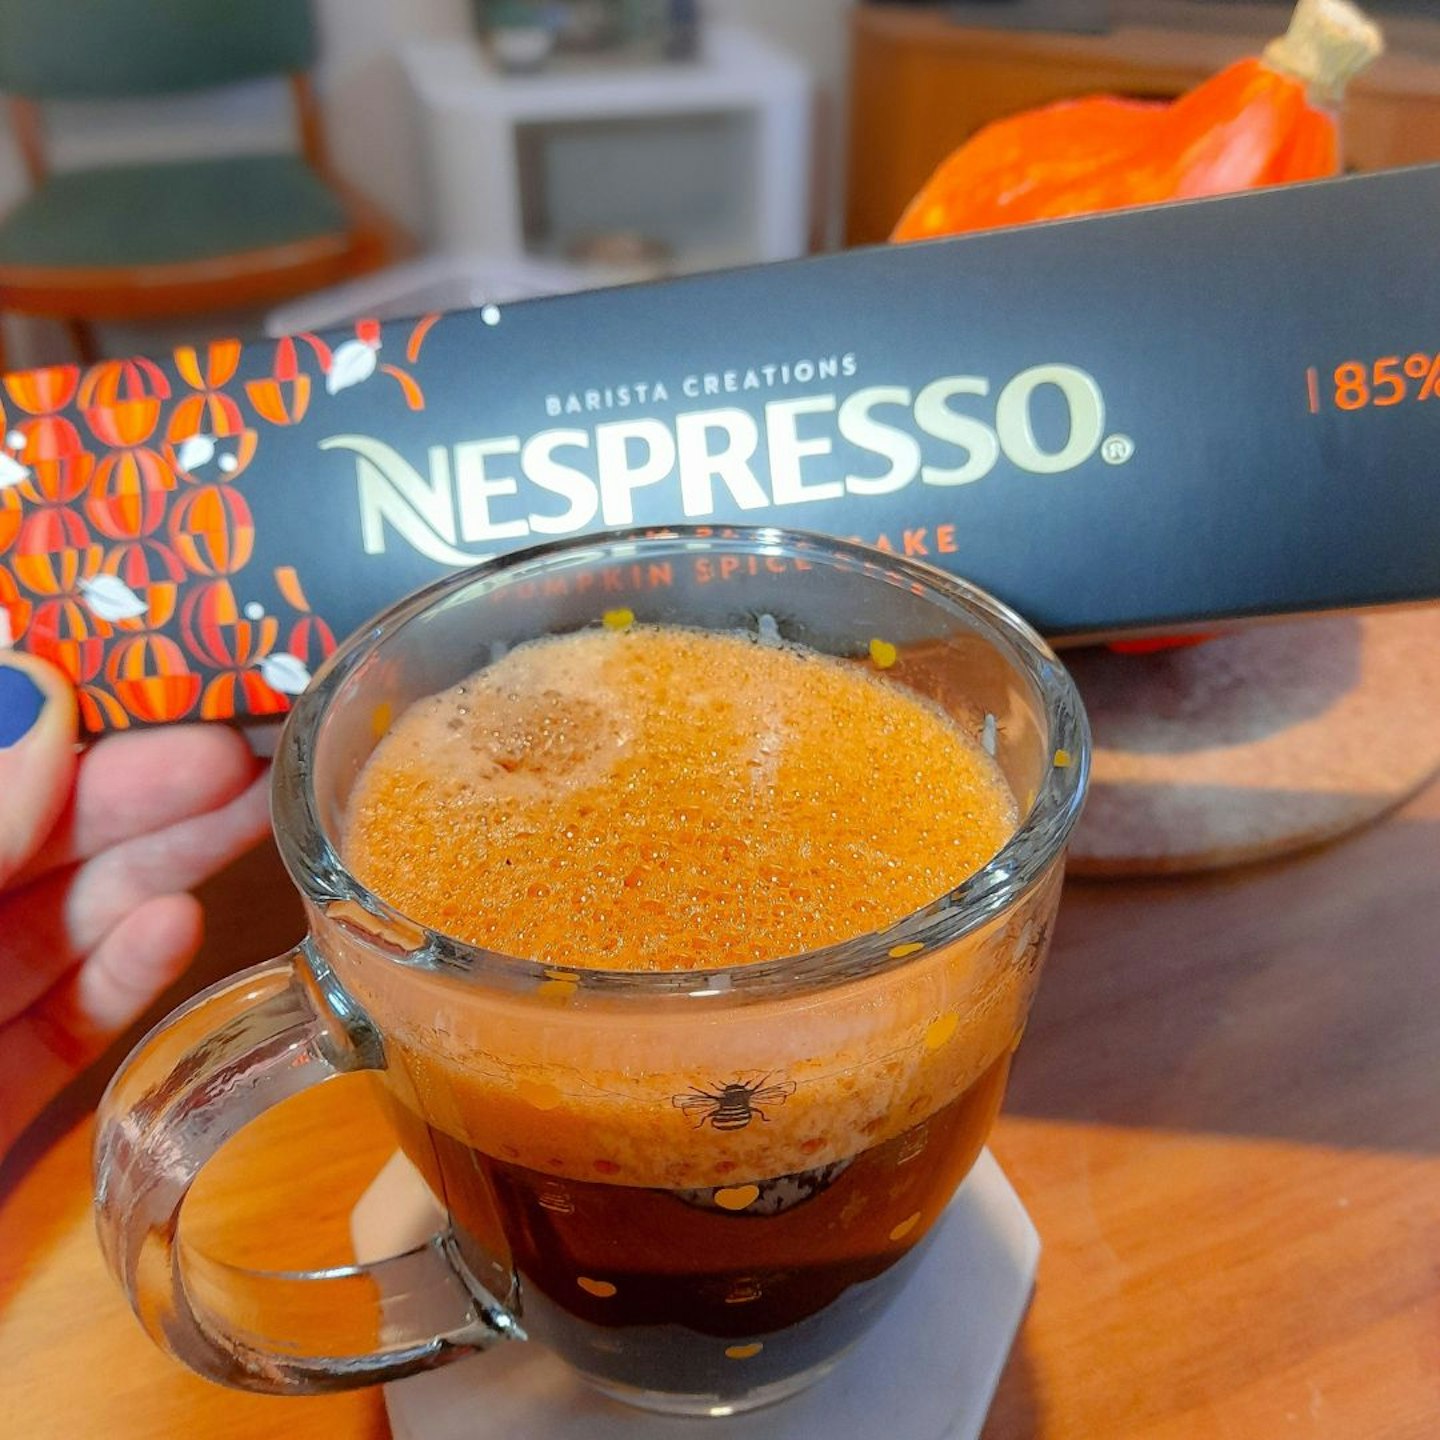 Nespresso Pumpkin Spice Cake tested